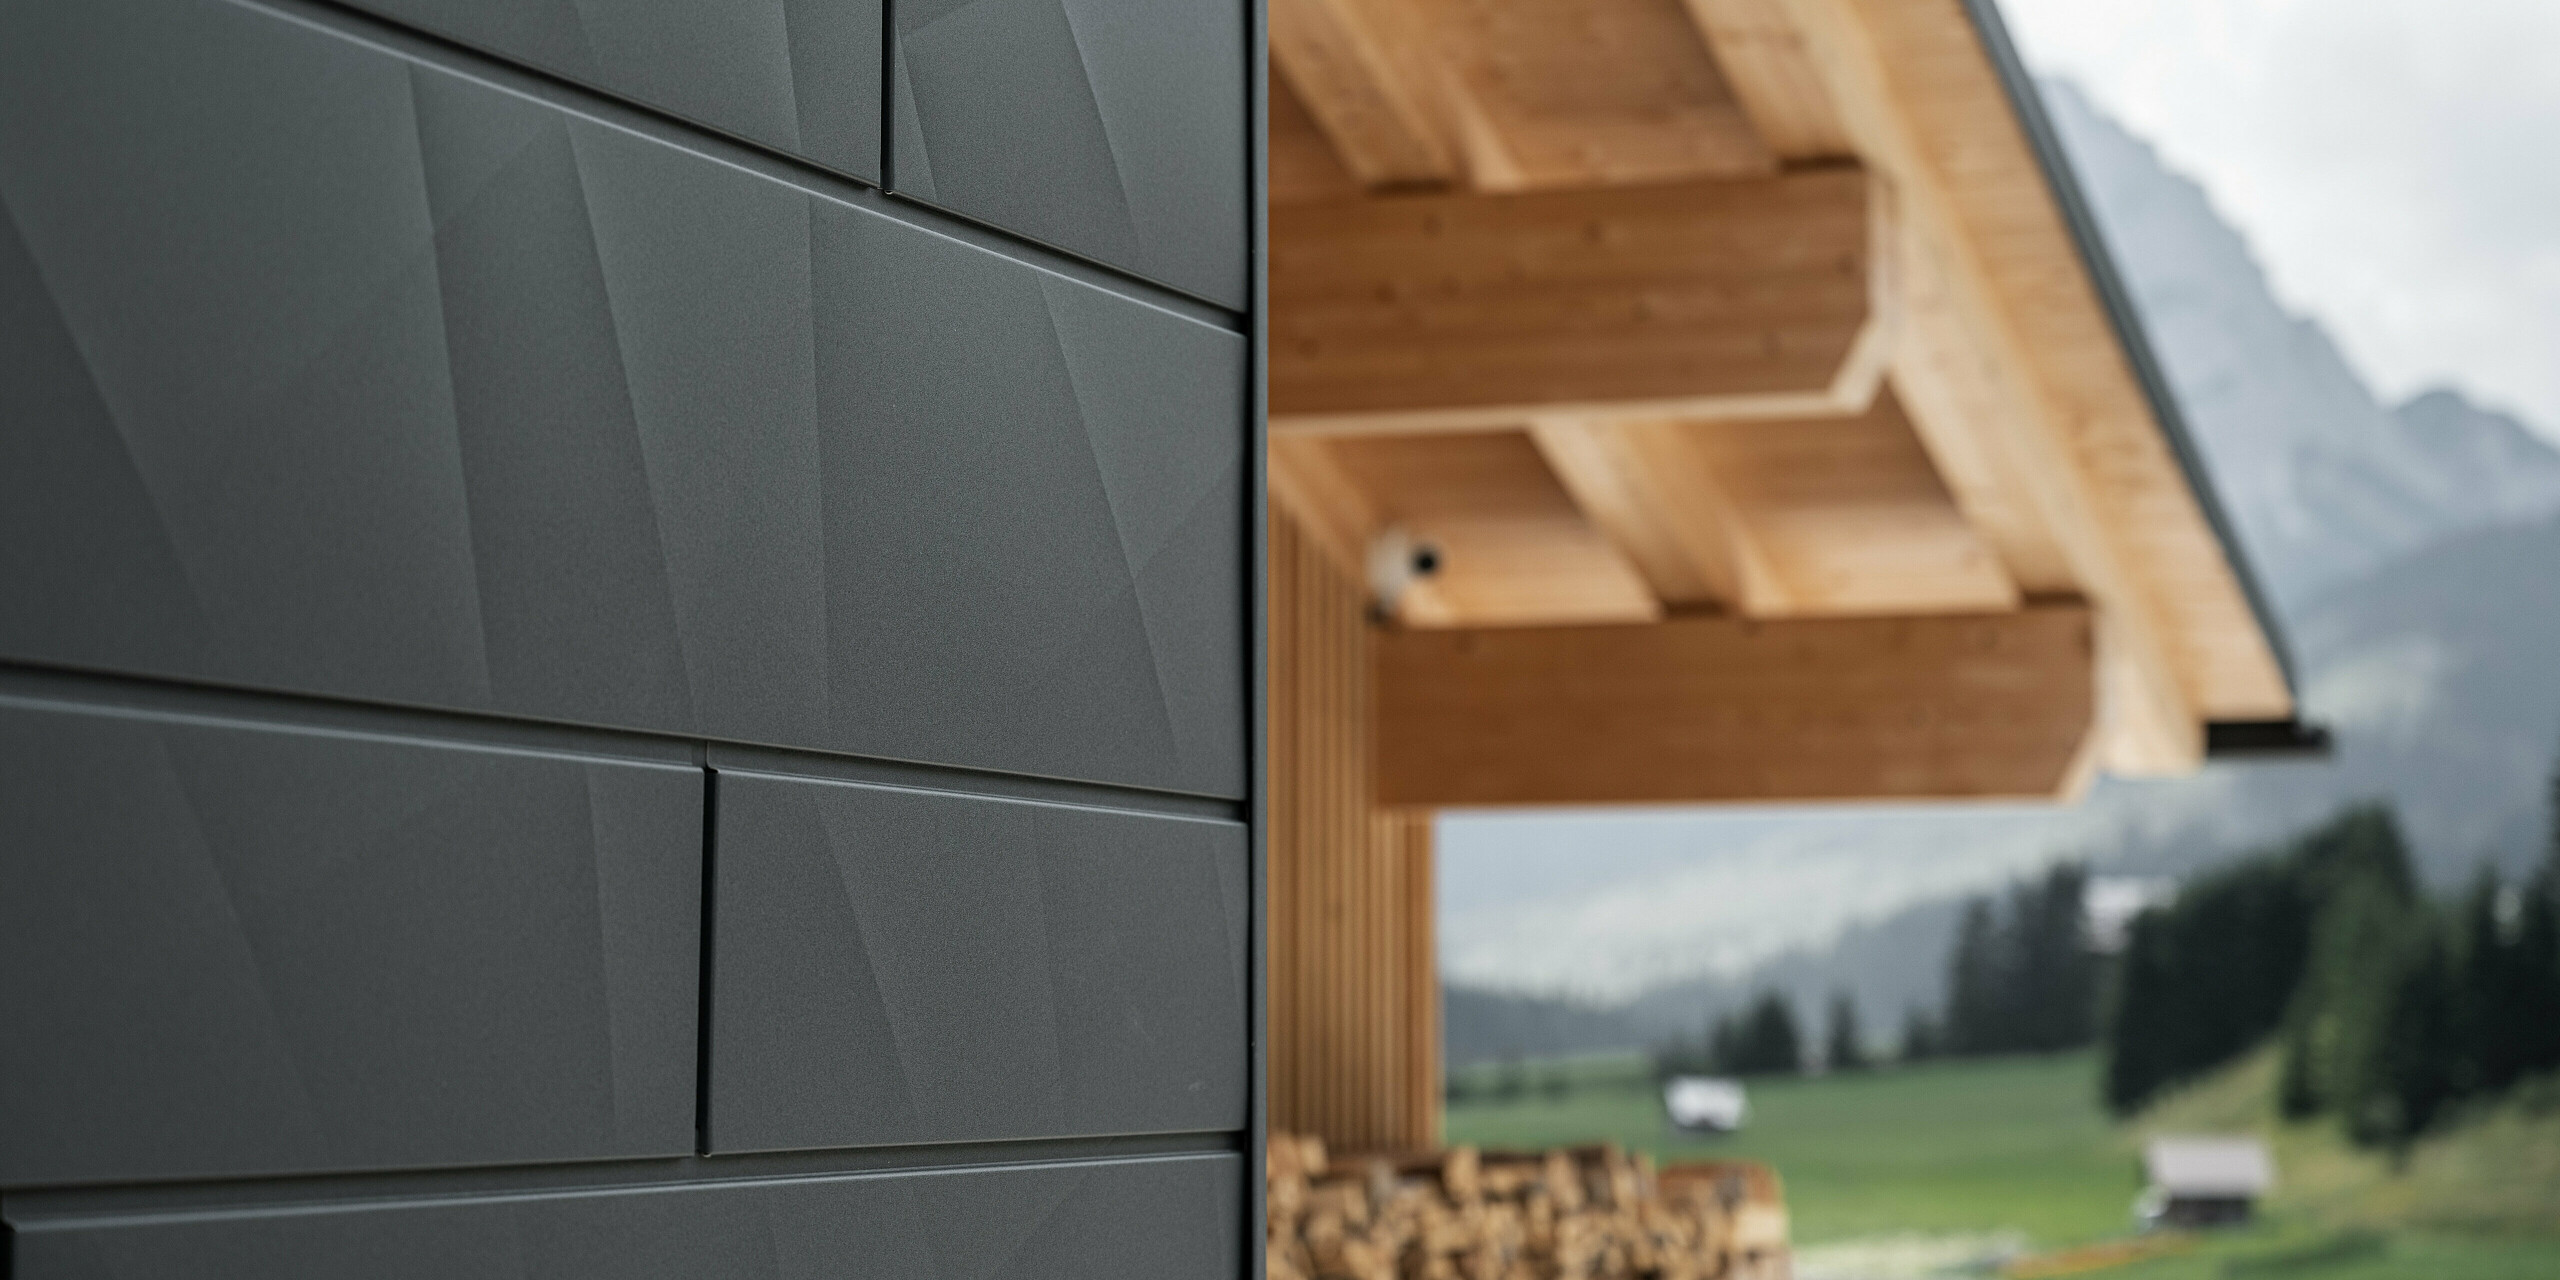 Nahaufnahme der Siding.X Fassadenpaneele in P.10 Schwarz von PREFA an der Casa Hoffe in Sappada, Italien. Das Fassadensystem aus Aluminium ist gekonnt in einem modernen, abstrakten Design angebracht, das einen ansprechenden Kontrast zu den sichtbaren Holzelementen des Dachstuhls bildet. Die innovative Fassadenlösung fügt sich nahtlos in das alpine Ambiente ein und steht für die Verbindung von Funktionalität, Beständigkeit und ästhetischer Baukultur.